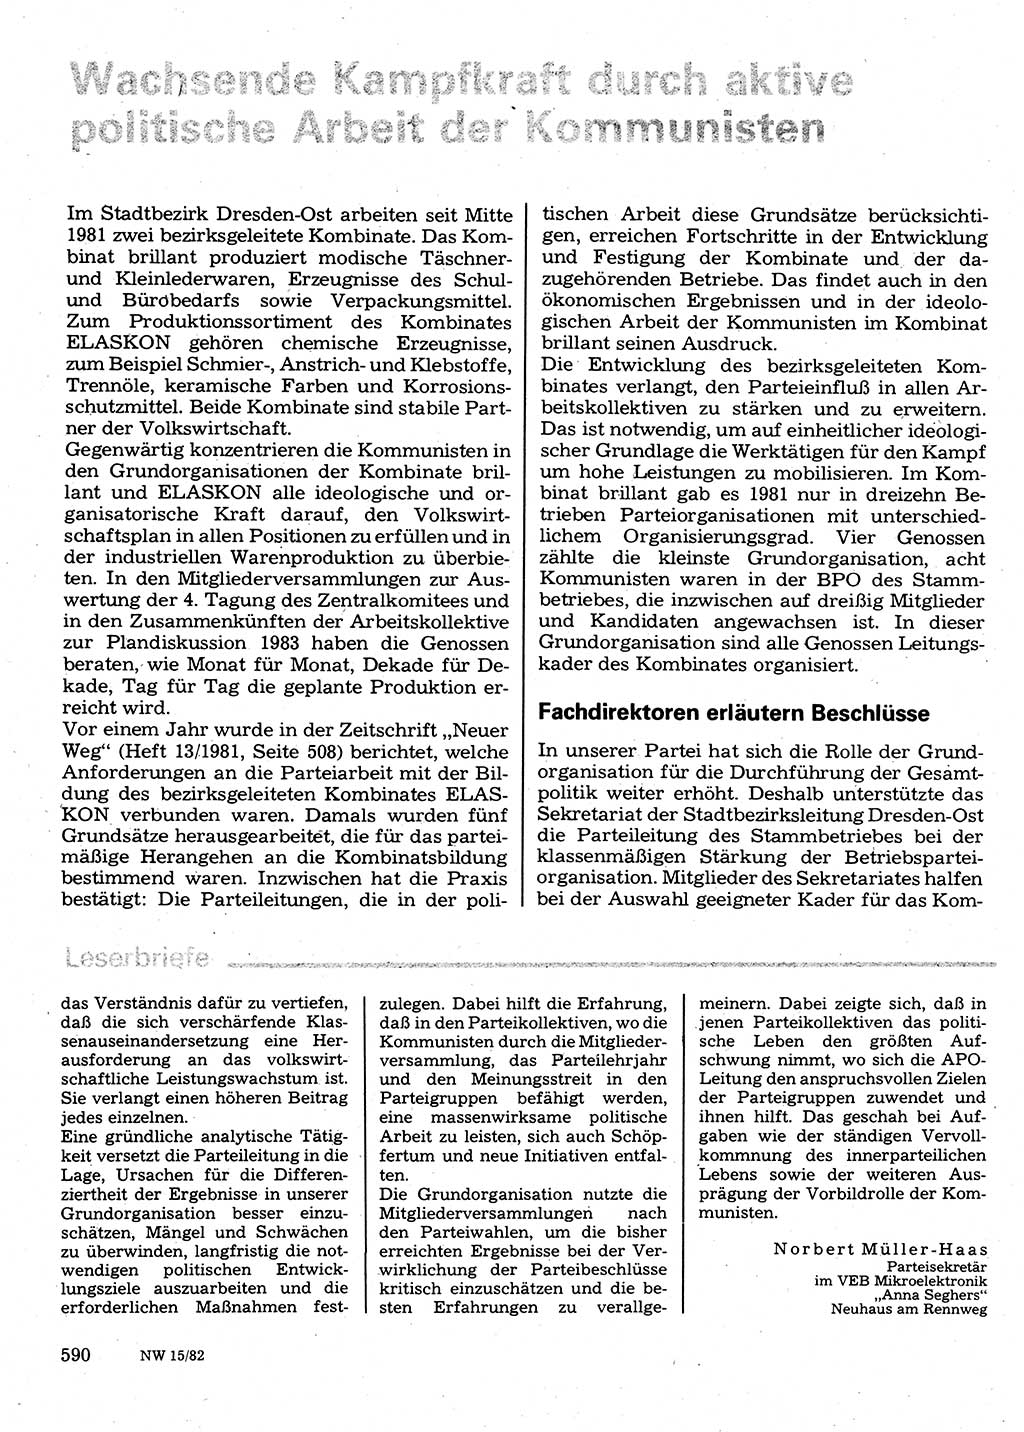 Neuer Weg (NW), Organ des Zentralkomitees (ZK) der SED (Sozialistische Einheitspartei Deutschlands) für Fragen des Parteilebens, 37. Jahrgang [Deutsche Demokratische Republik (DDR)] 1982, Seite 590 (NW ZK SED DDR 1982, S. 590)